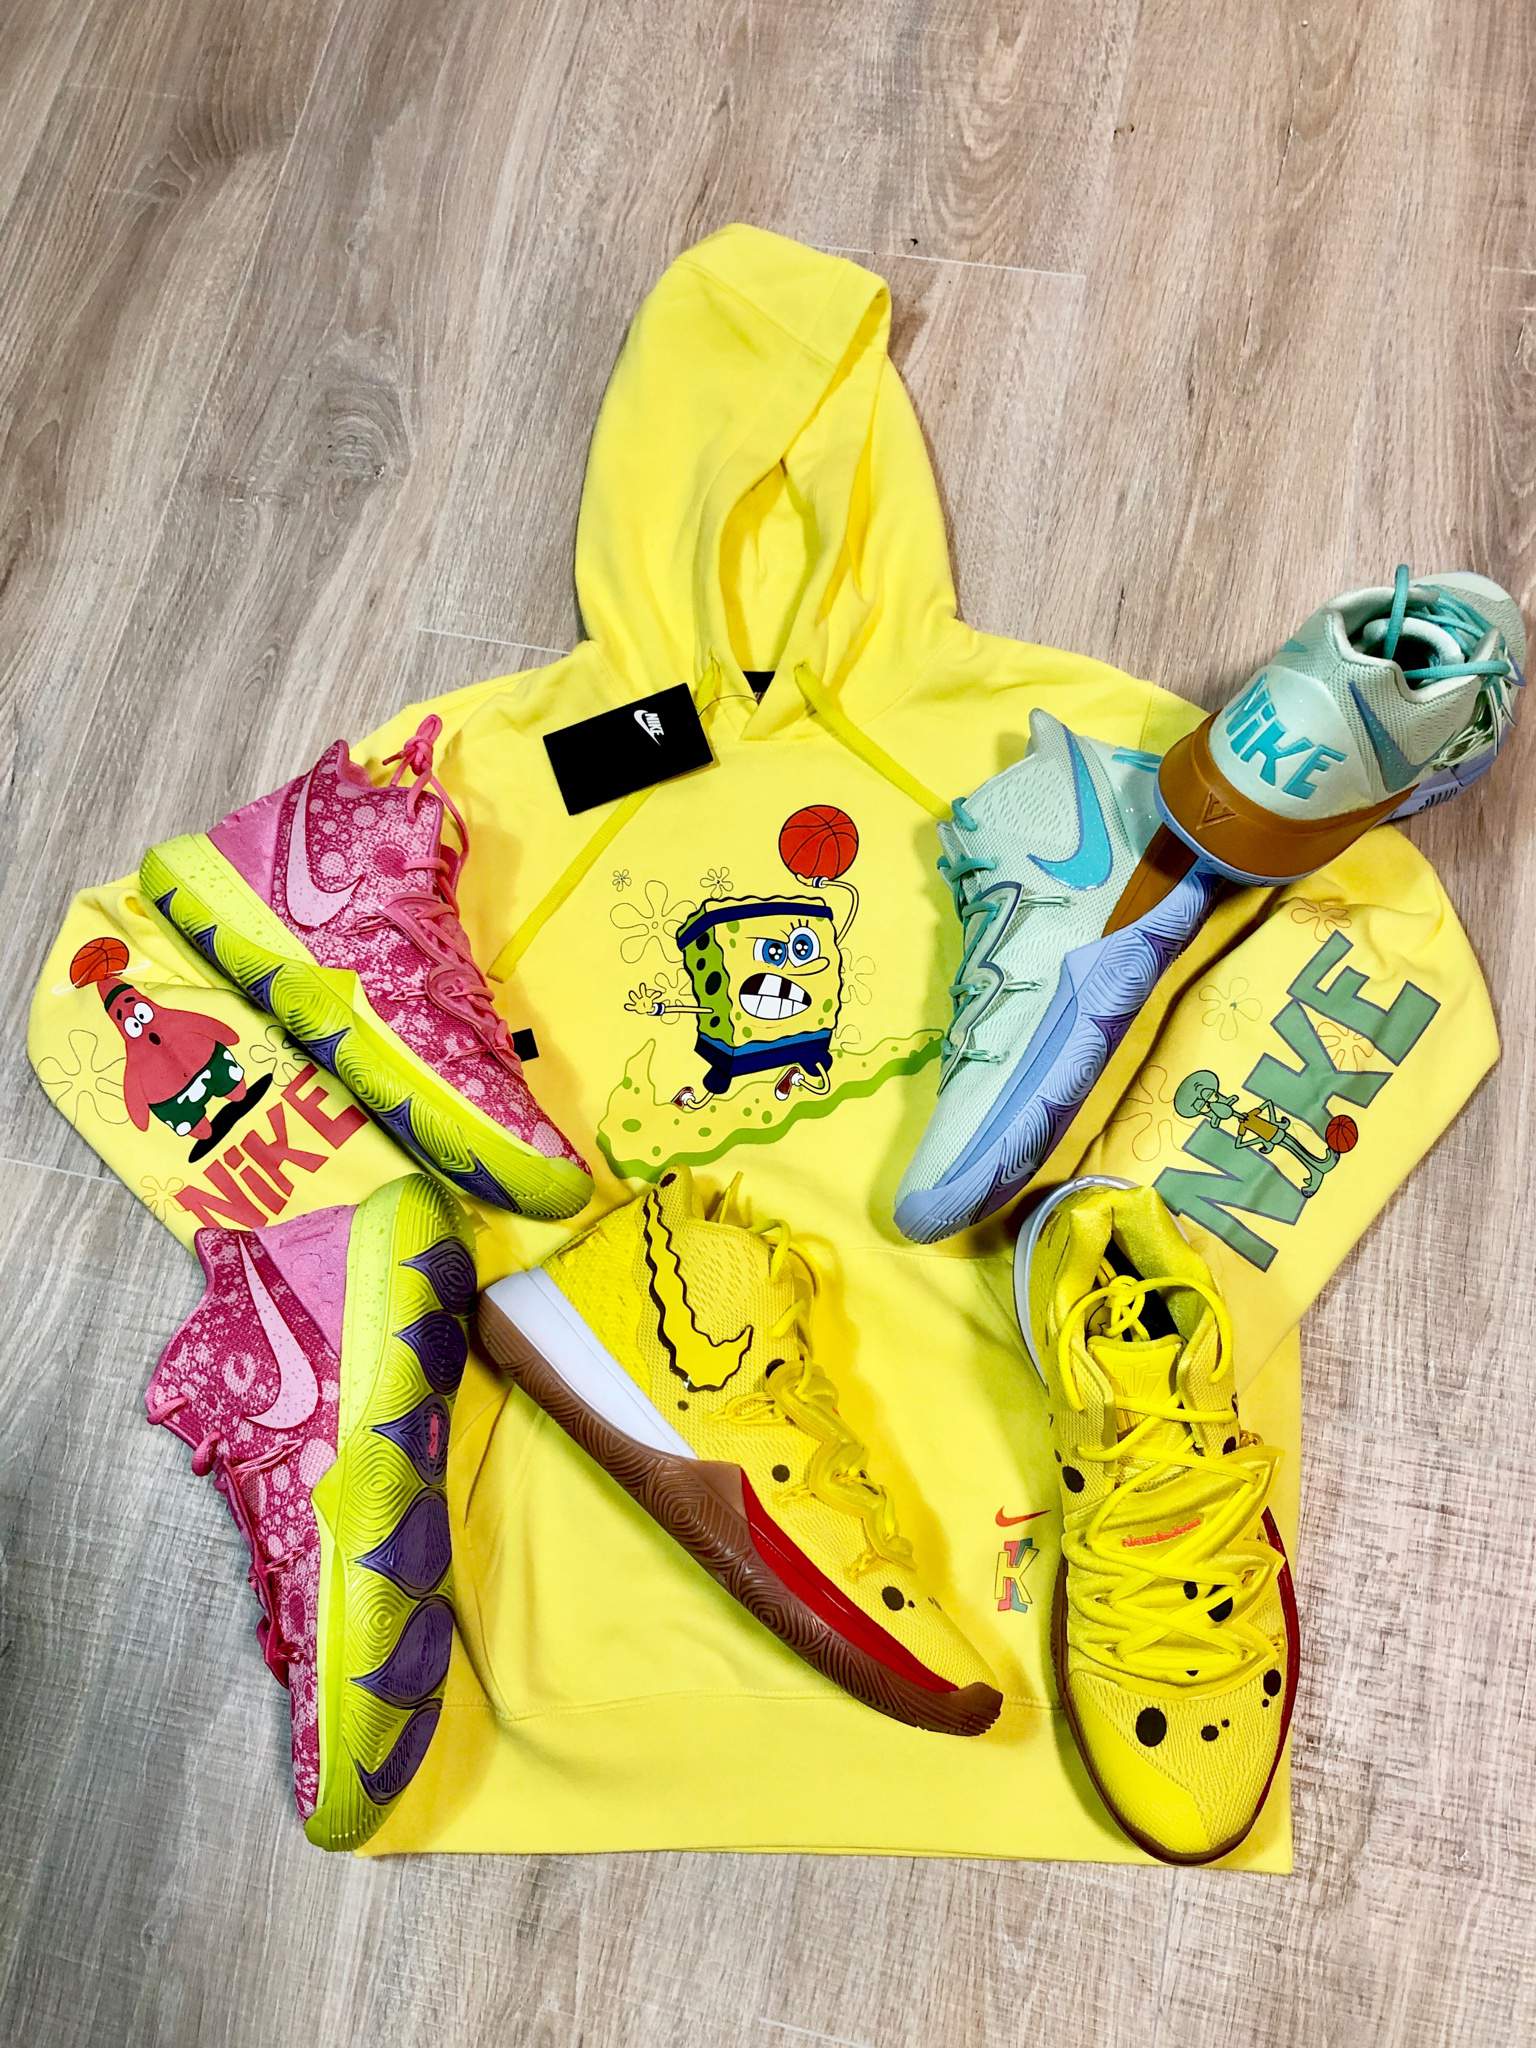 spongebob kyrie hoodie yellow